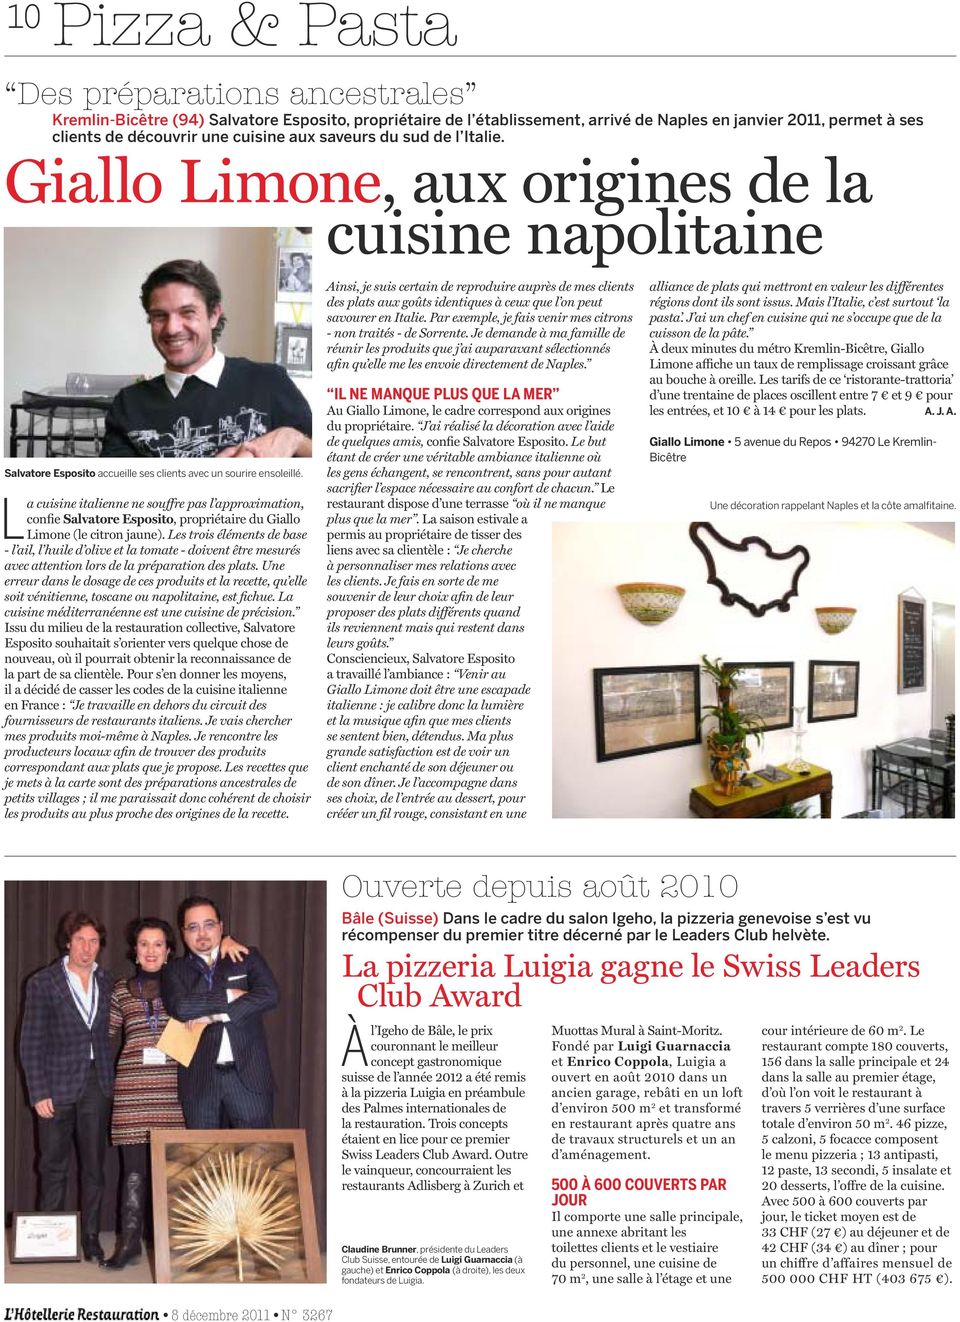 La cuisine italienne ne souffre pas l approximation, confie Salvatore Esposito, propriétaire du Giallo Limone (le citron jaune).